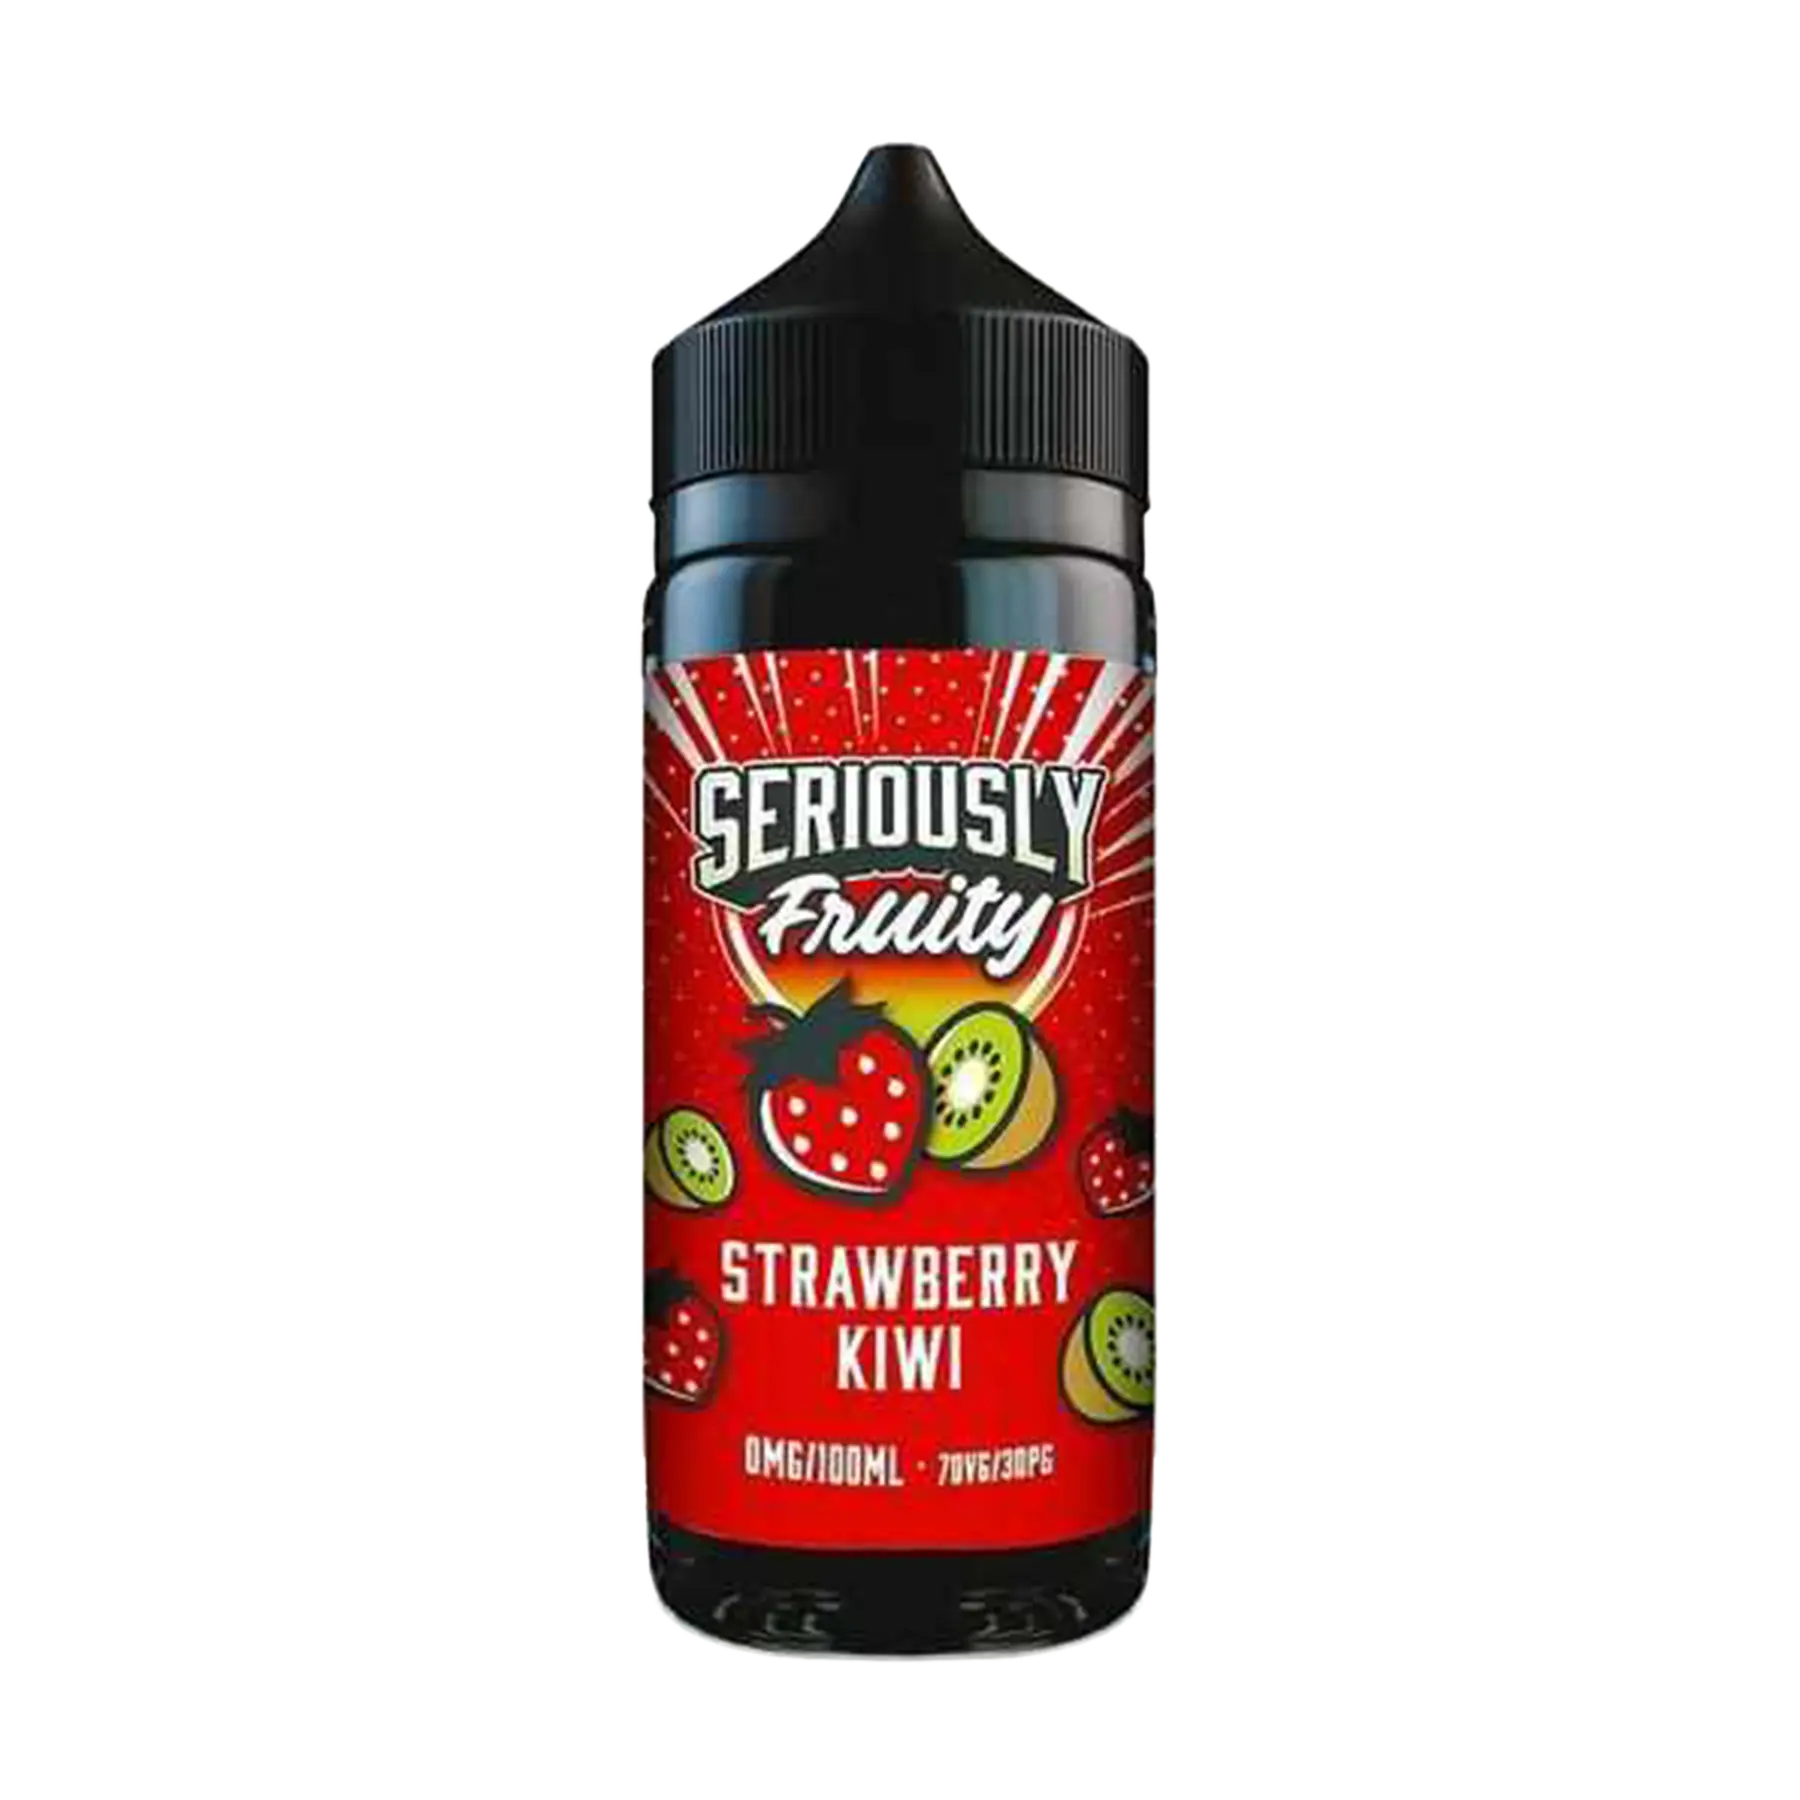 Doozy Seriously Fruity Strawberry Kiwi 100ml E Liquid Shortfill